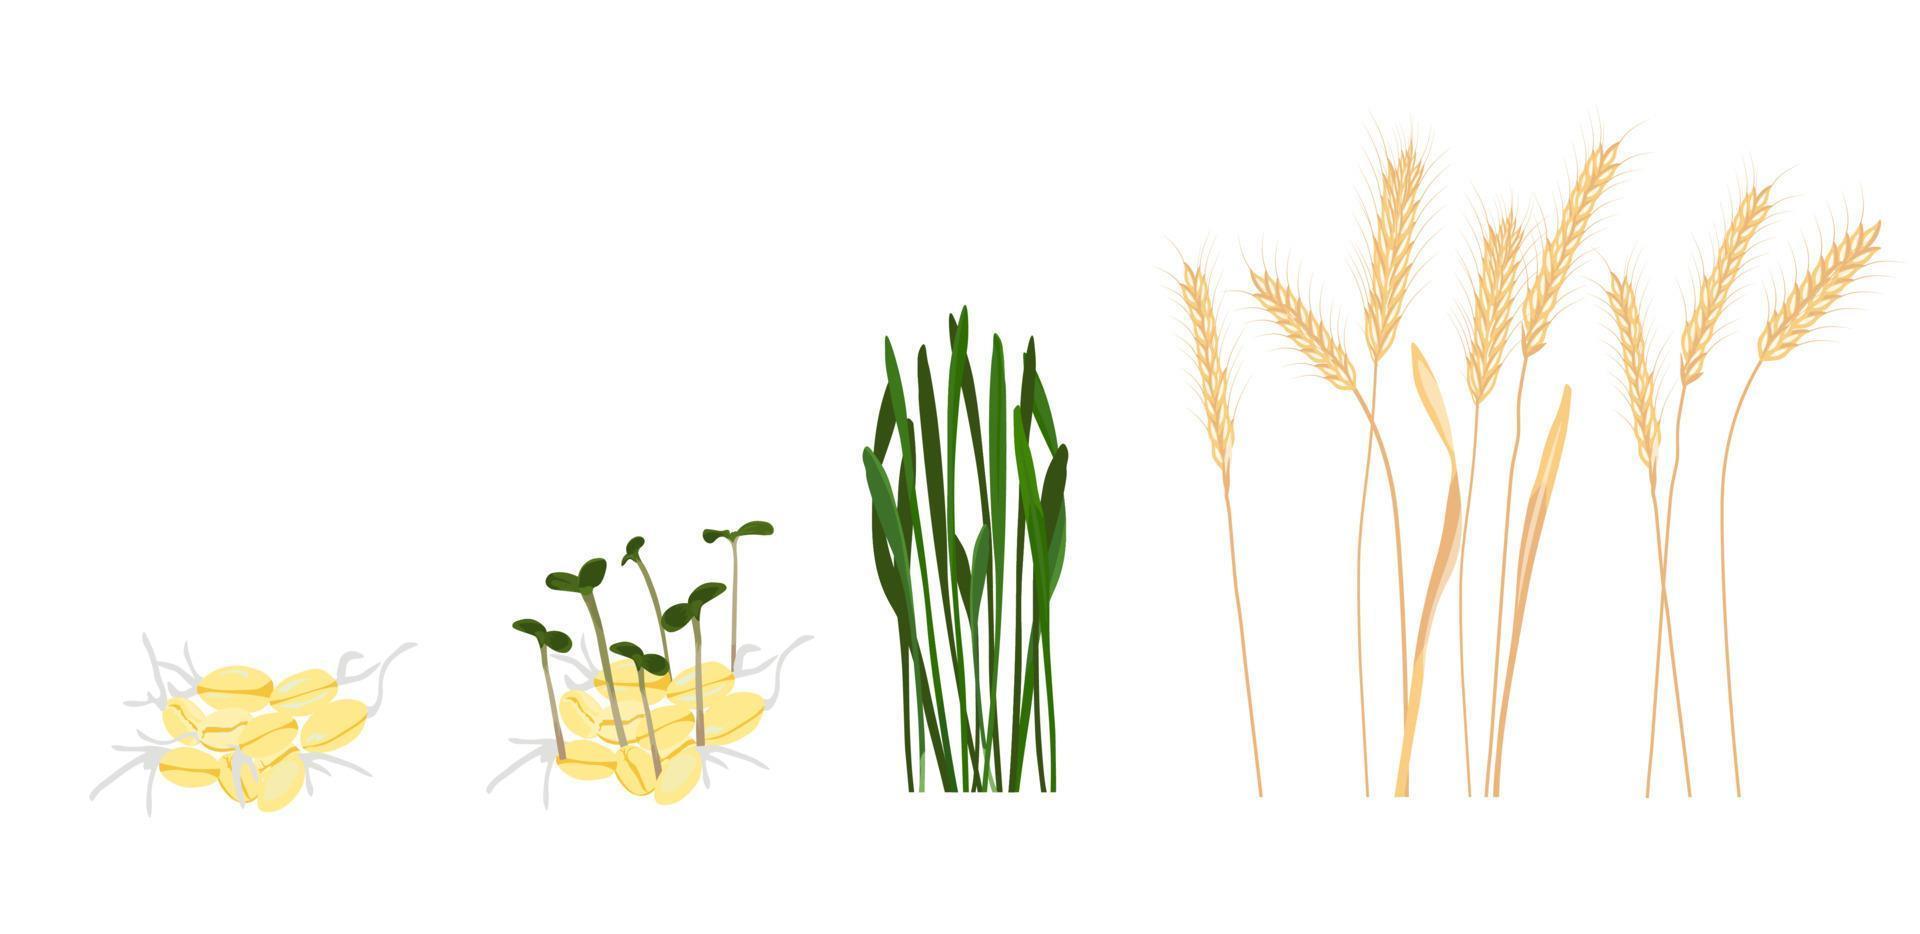 Ilustración de stock de vector de etapa de crecimiento de trigo. ciclo de crecimiento de una planta de trigo. Aislado en un fondo blanco.